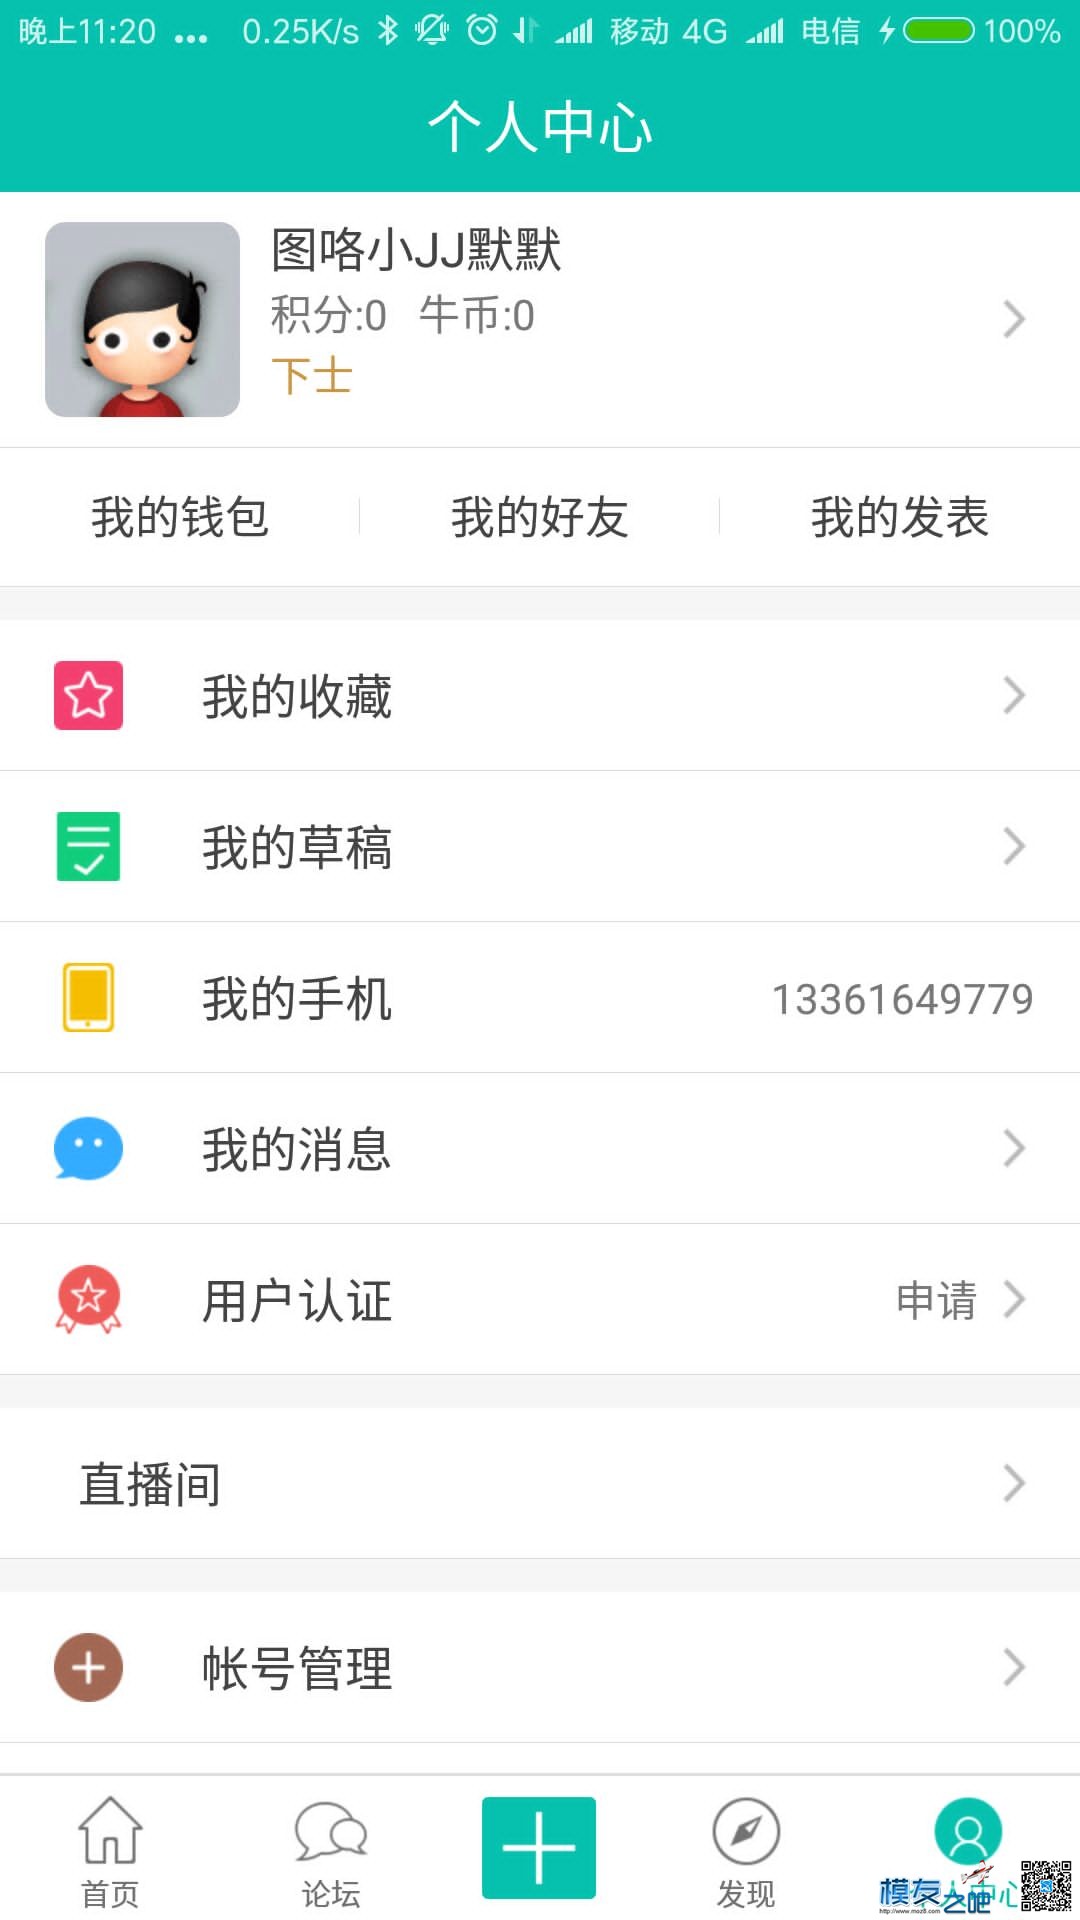 【模友之吧】100个aomway5.8G-500mw图传用于论坛推广！  作者:zhangyiyun2014 7875 